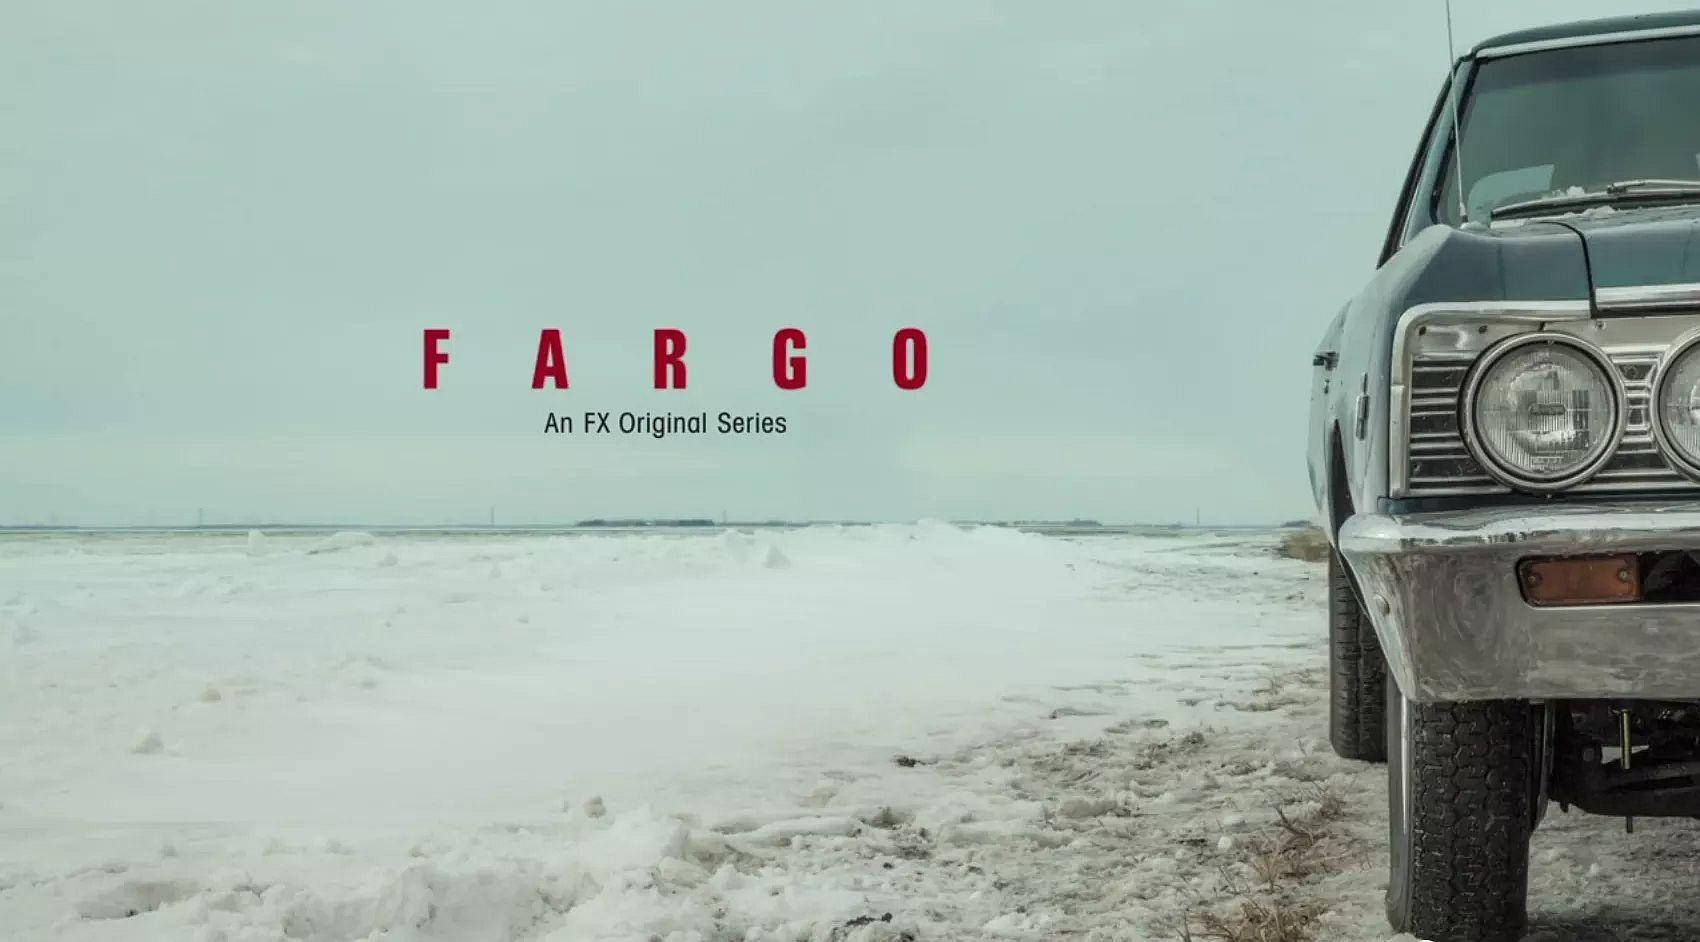 Serieoriginal De Fargo En Fx Fondo de pantalla